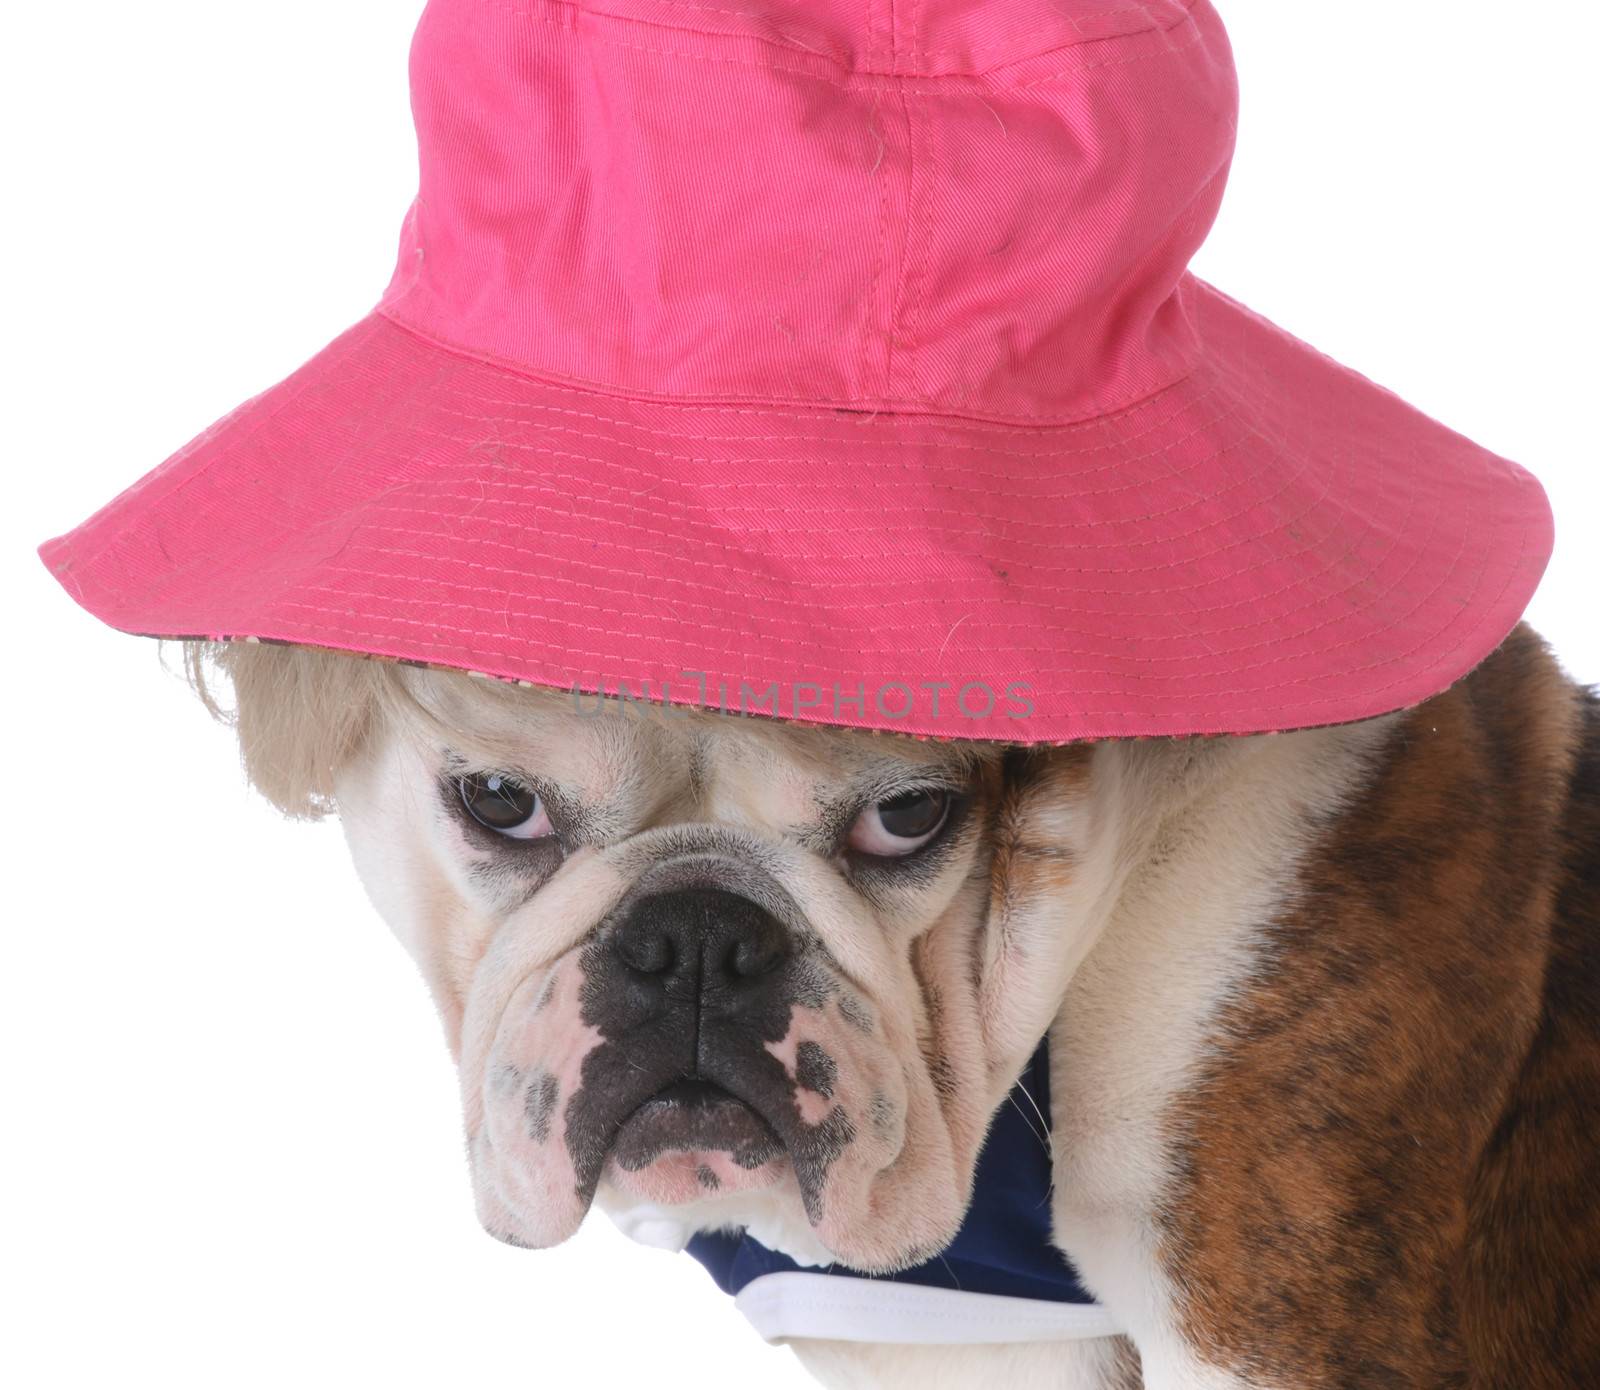 female dog wearing wig and hat on white background - bulldog